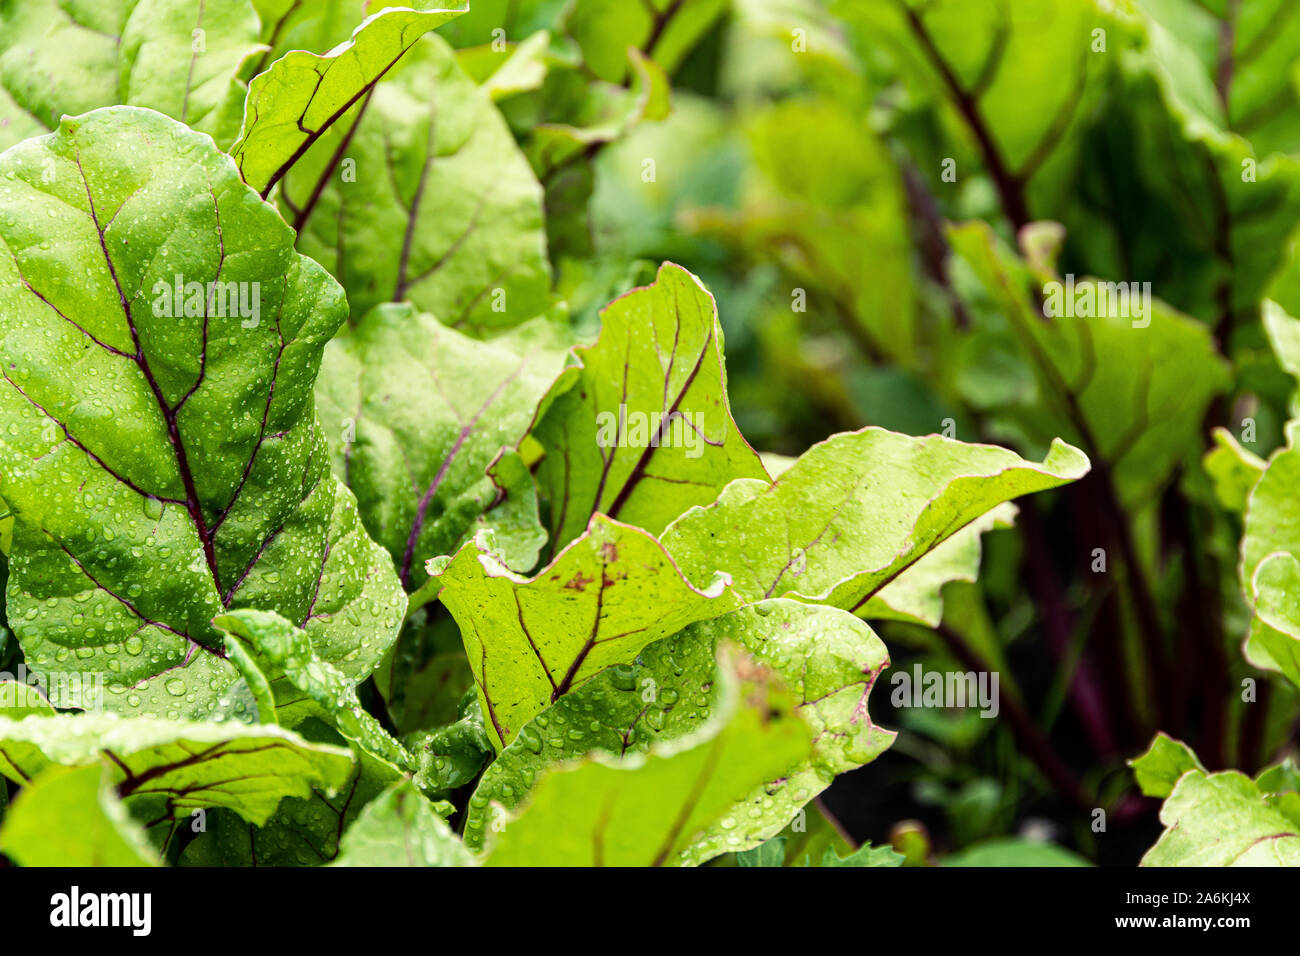 Les feuilles de betterave dans le jardin. Betteraves en croissant pour le jardin alimentation saine, menu végétarien. Banque D'Images